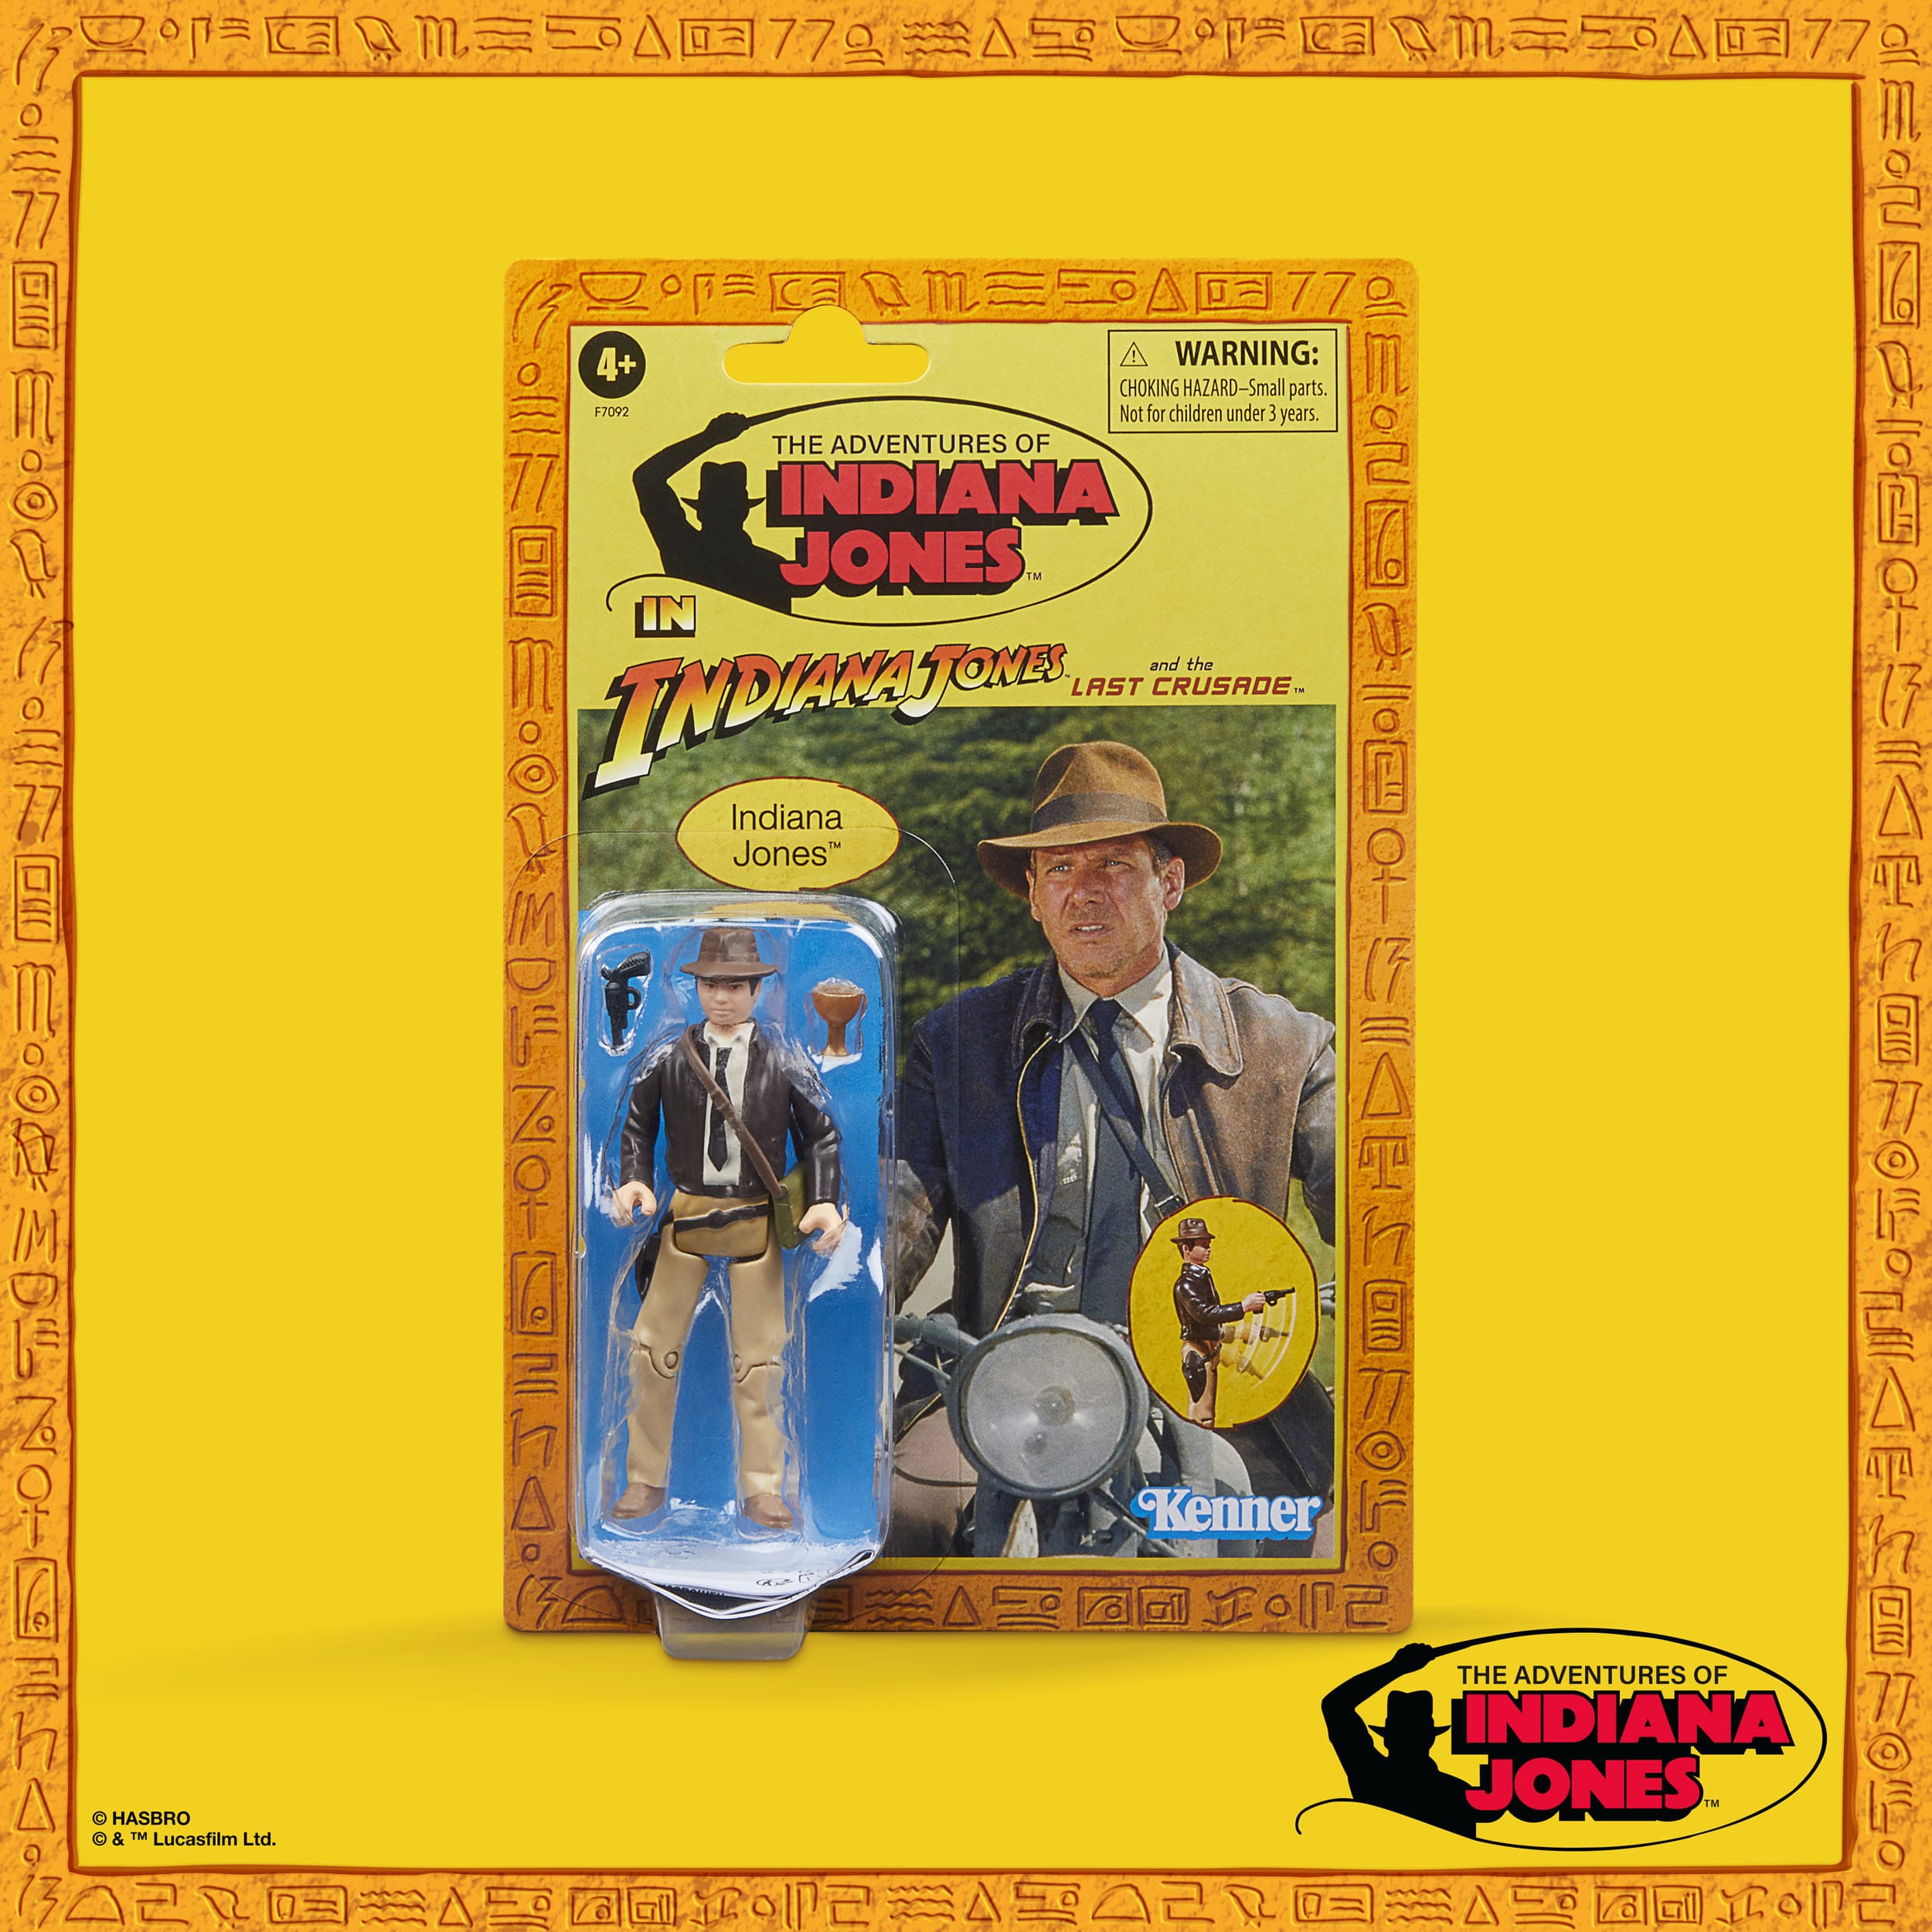 Indiana Jones Retro Collection Actionfigur Indiana Jones (Der letzte Kreuzzug) 10 cm HASF7092 5010996160522